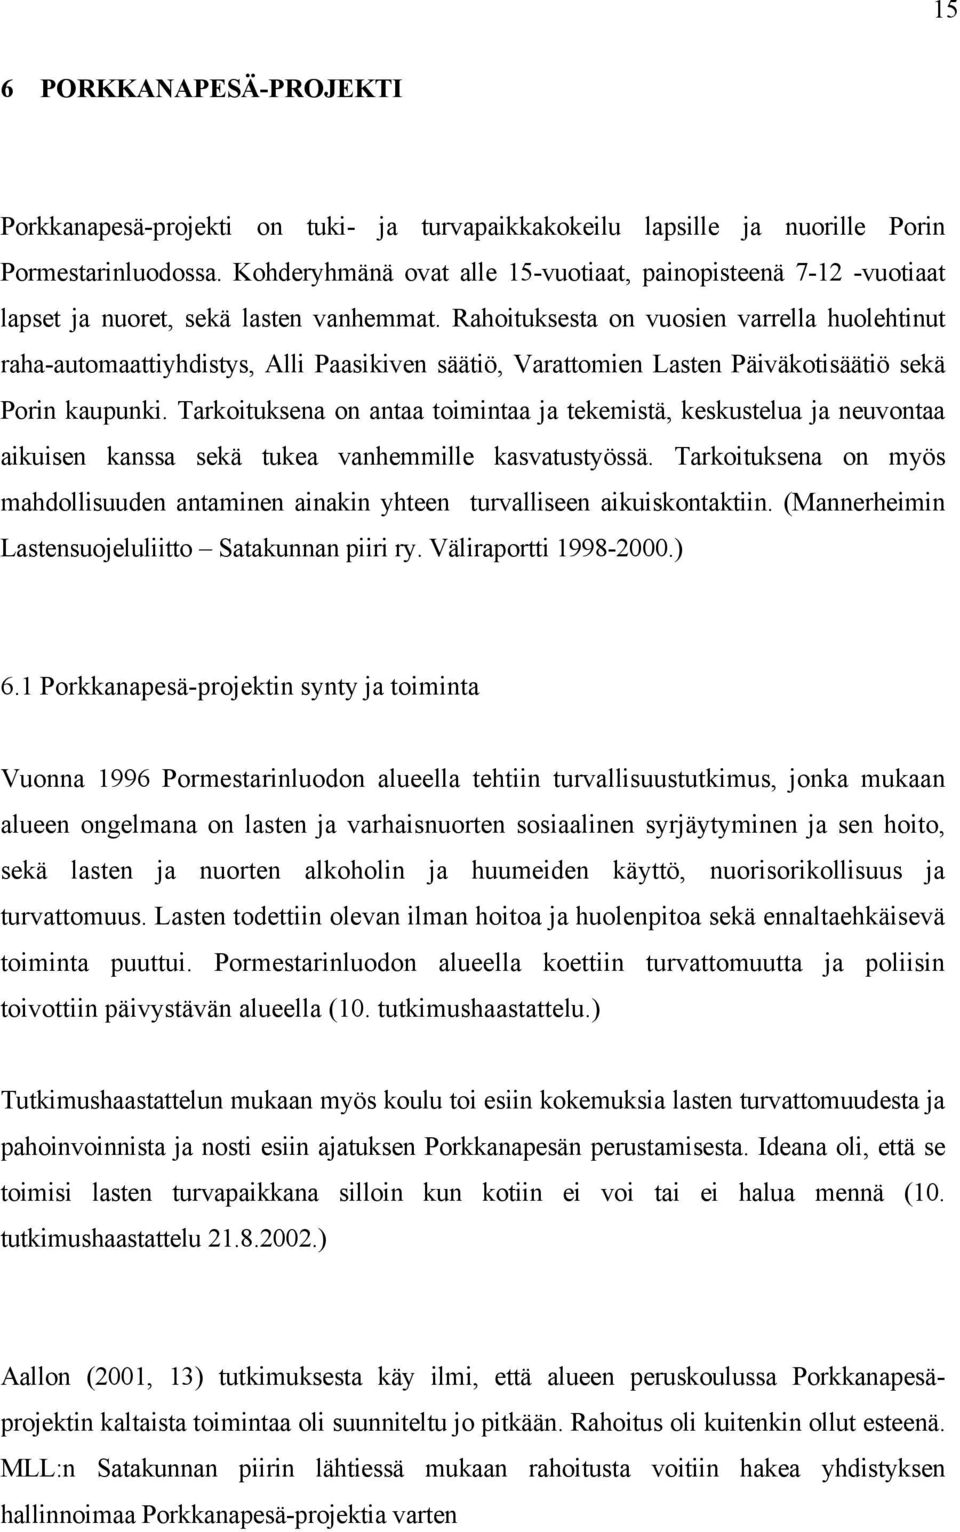 Rahoituksesta on vuosien varrella huolehtinut raha-automaattiyhdistys, Alli Paasikiven säätiö, Varattomien Lasten Päiväkotisäätiö sekä Porin kaupunki.